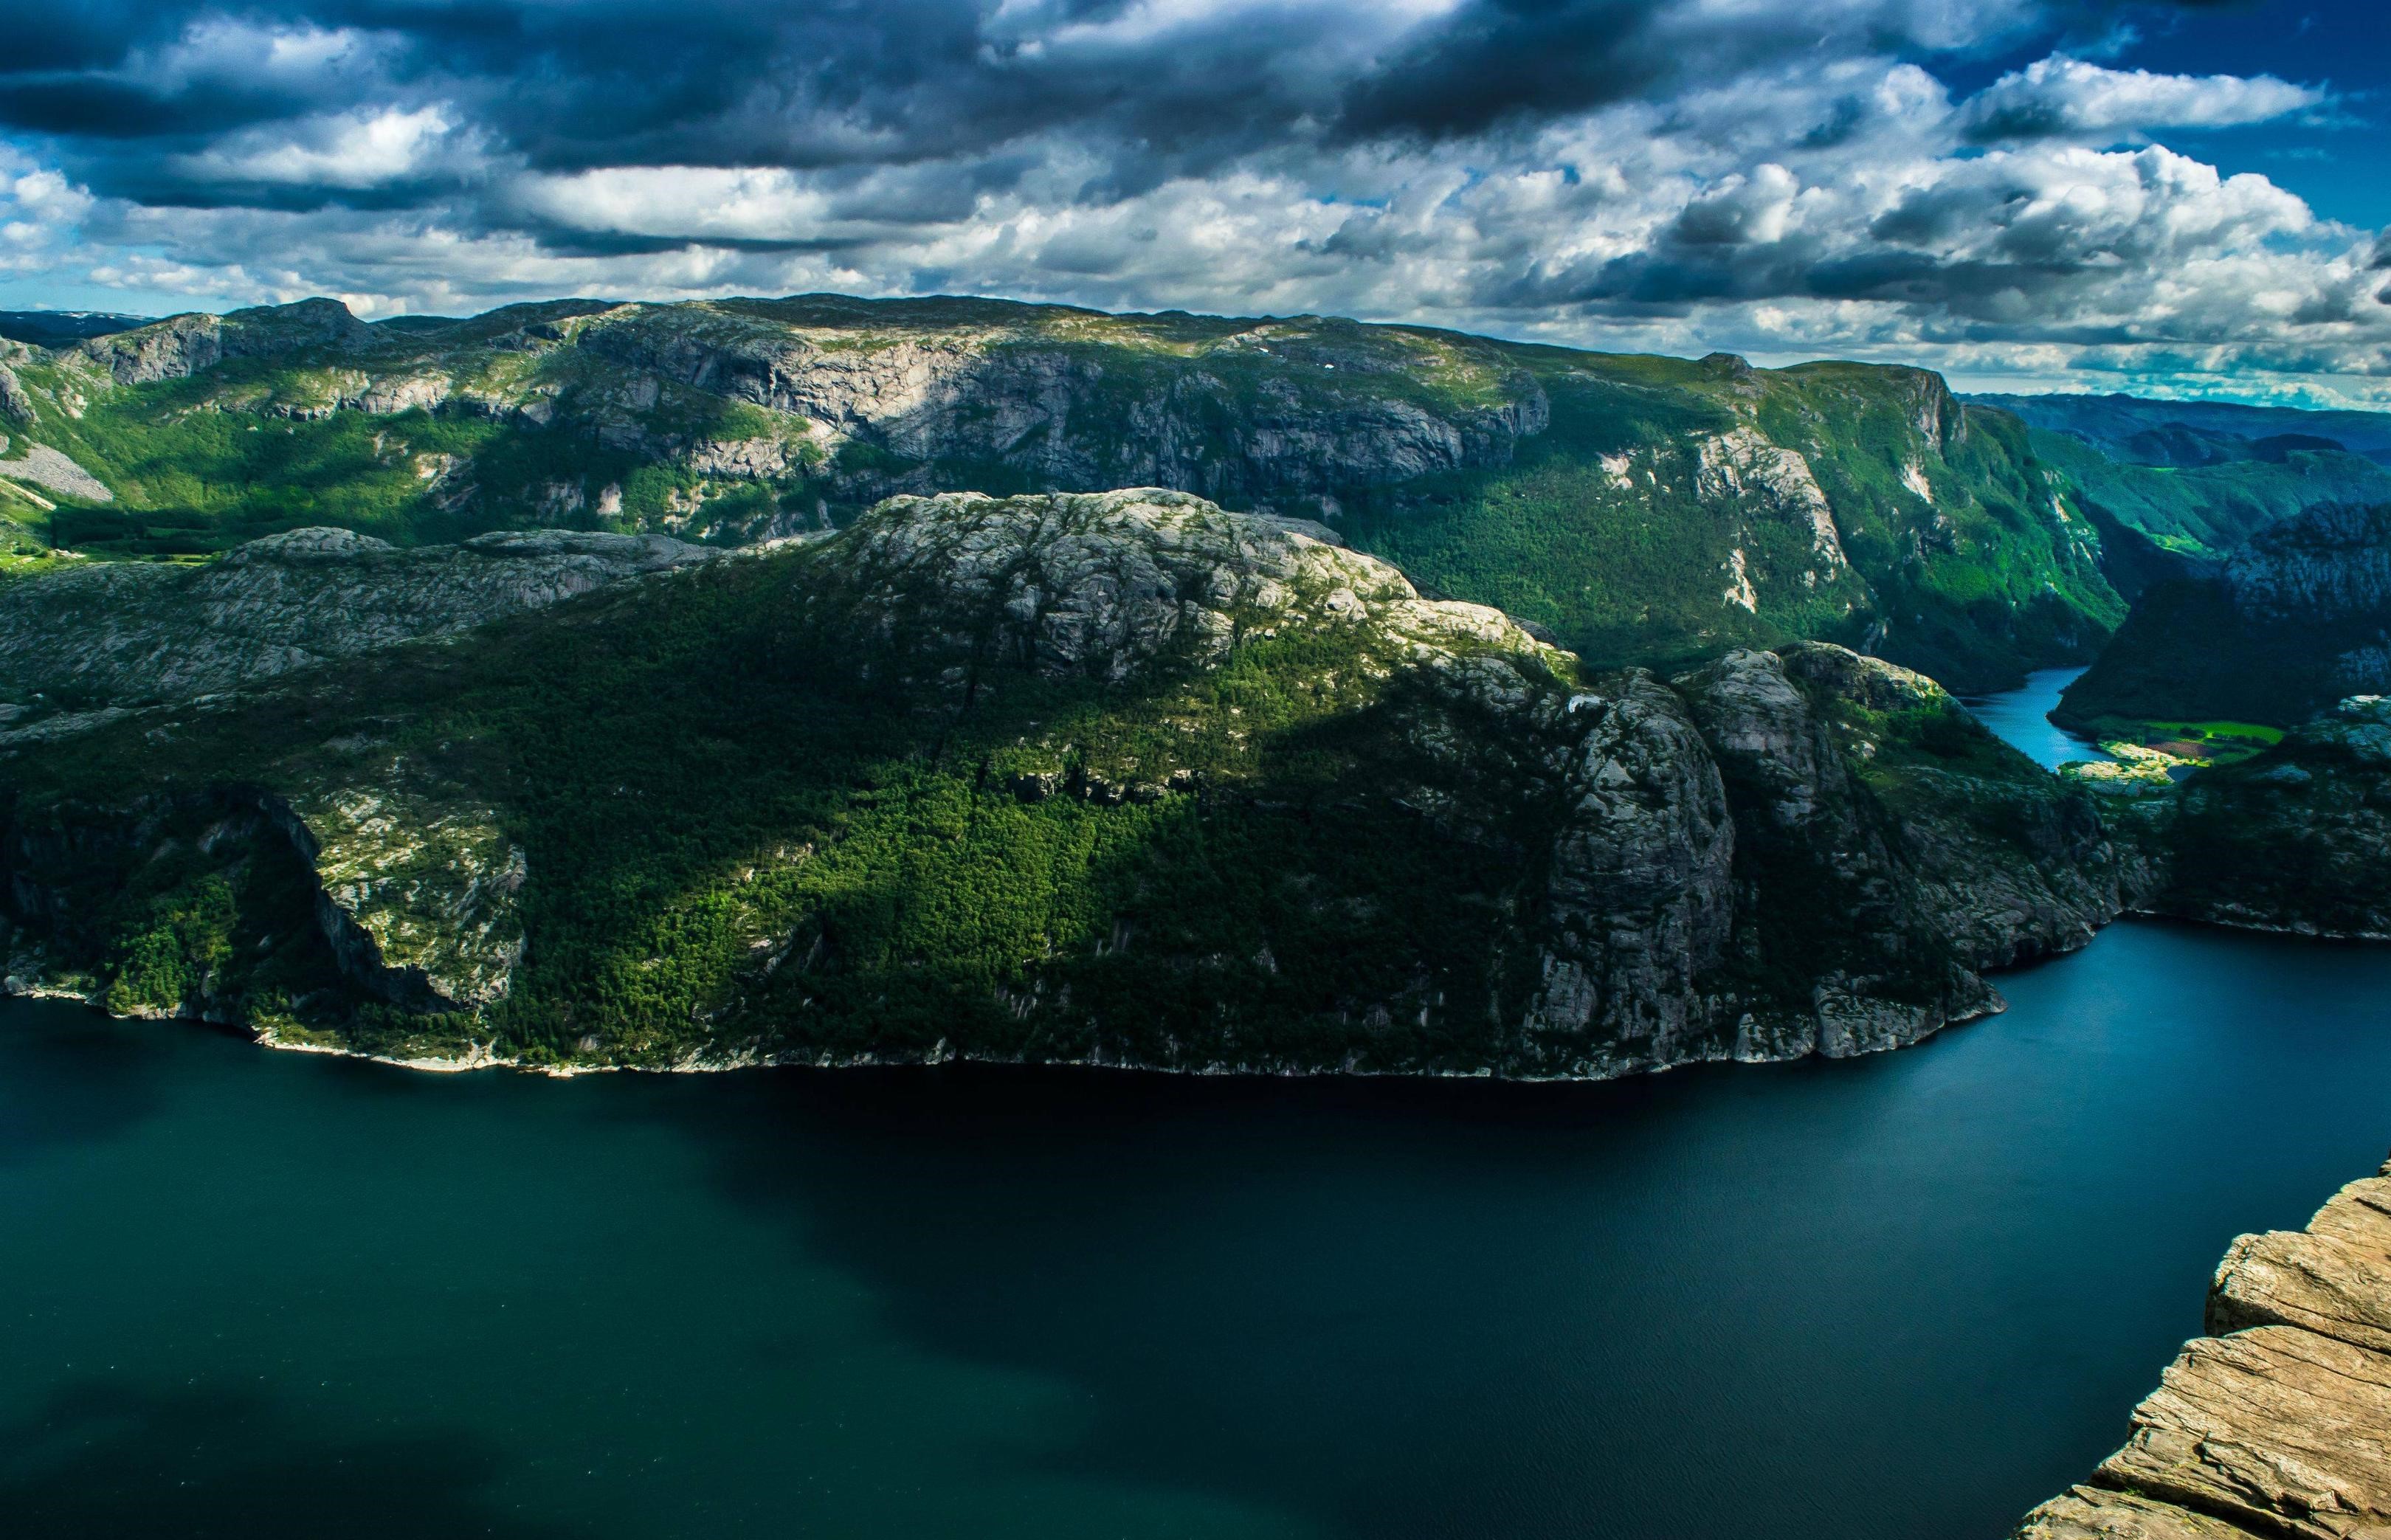 طبیعت رمزآلود اسکاندیناوی با تم سبز پررنگ زیبا 2023